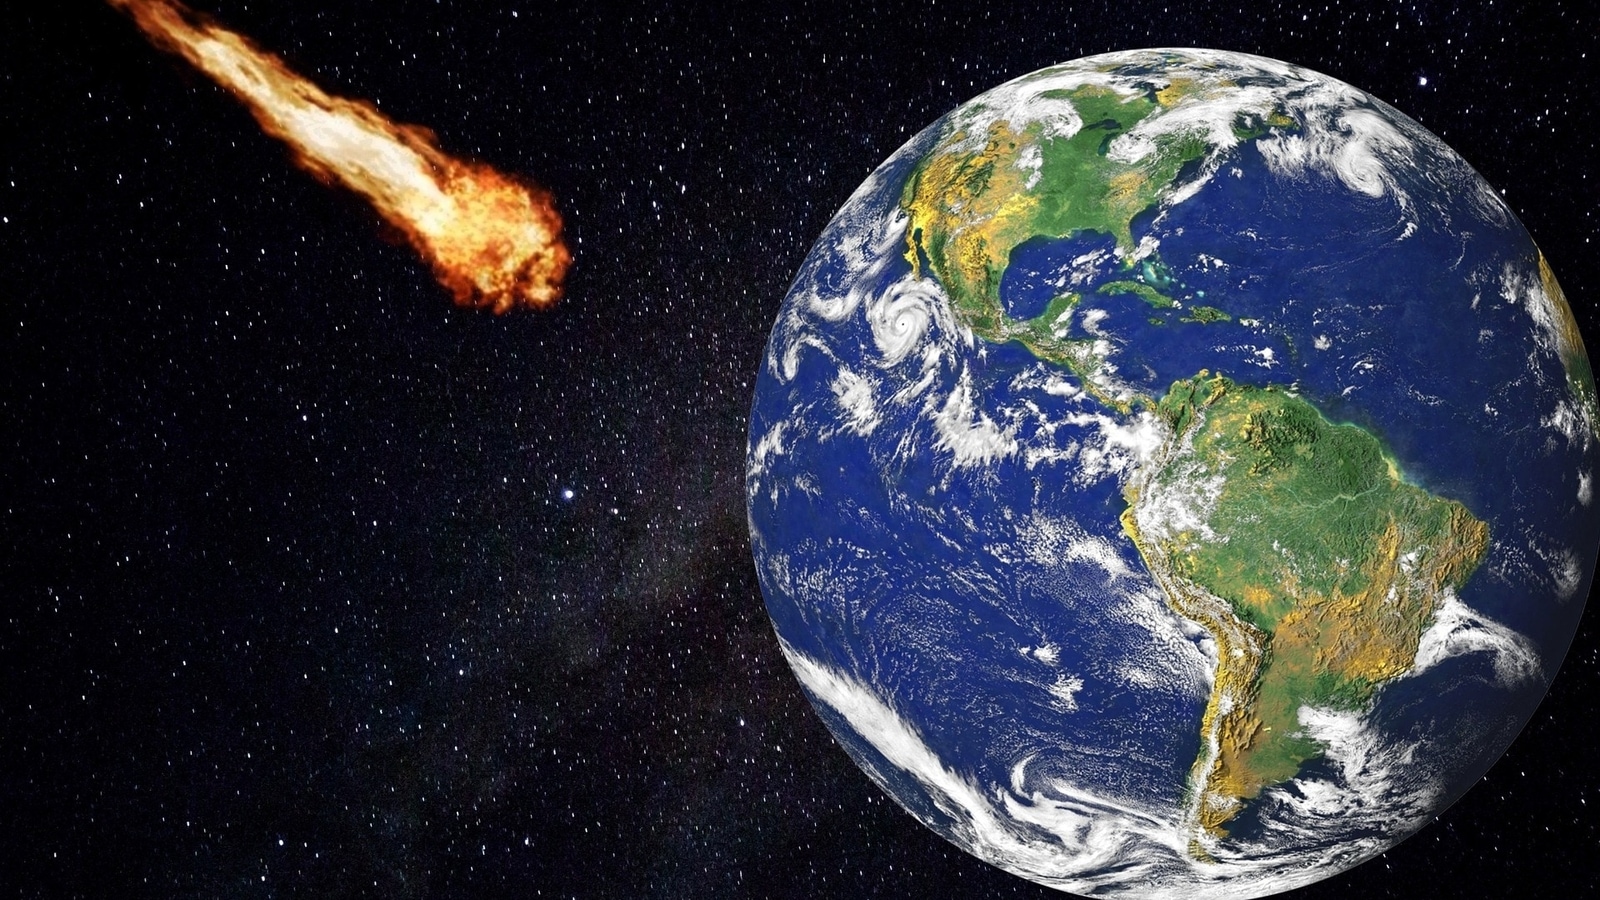 La NASA dit qu’un énorme astéroïde de la taille d’un bâtiment se dirige vers la Terre aujourd’hui